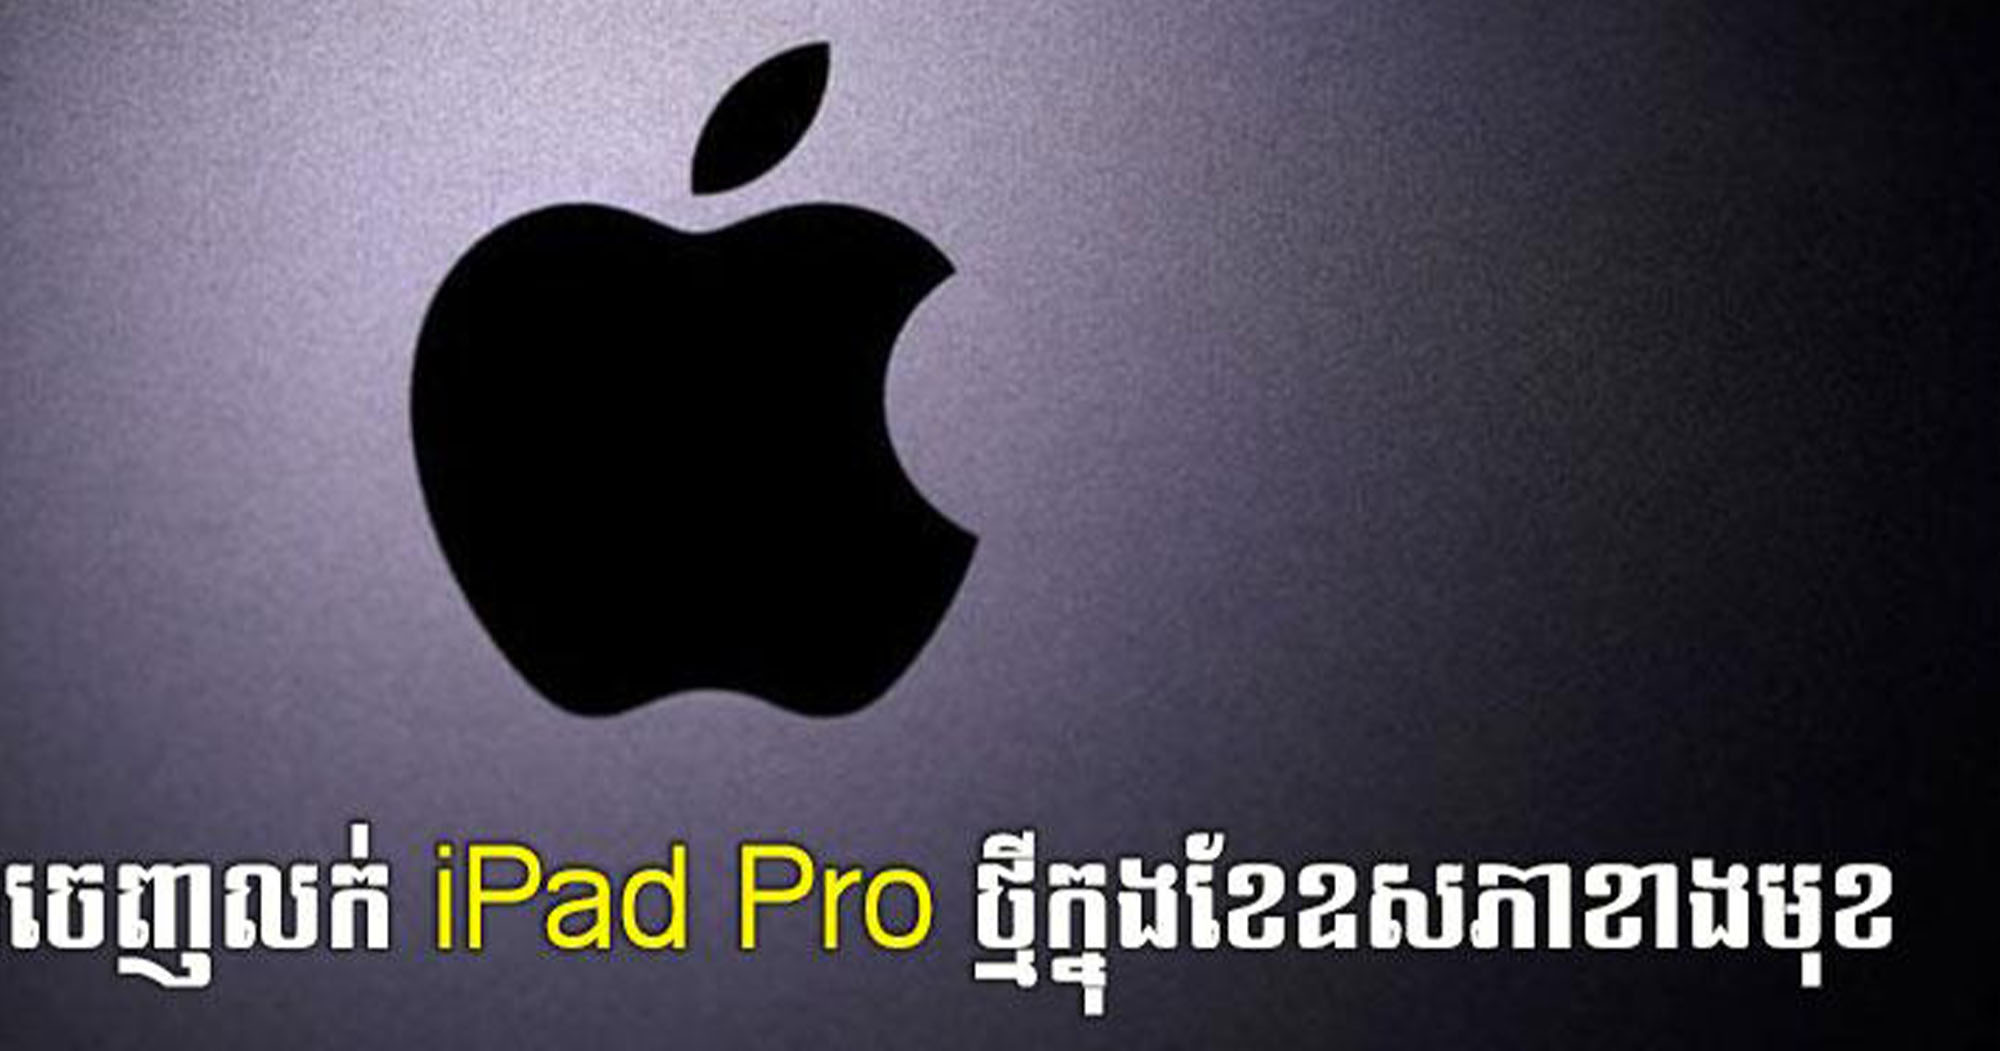 Apple គ្រោងចេញលក់ iPad Pro ថ្មីក្នុងខែឧសភាខាងមុខ